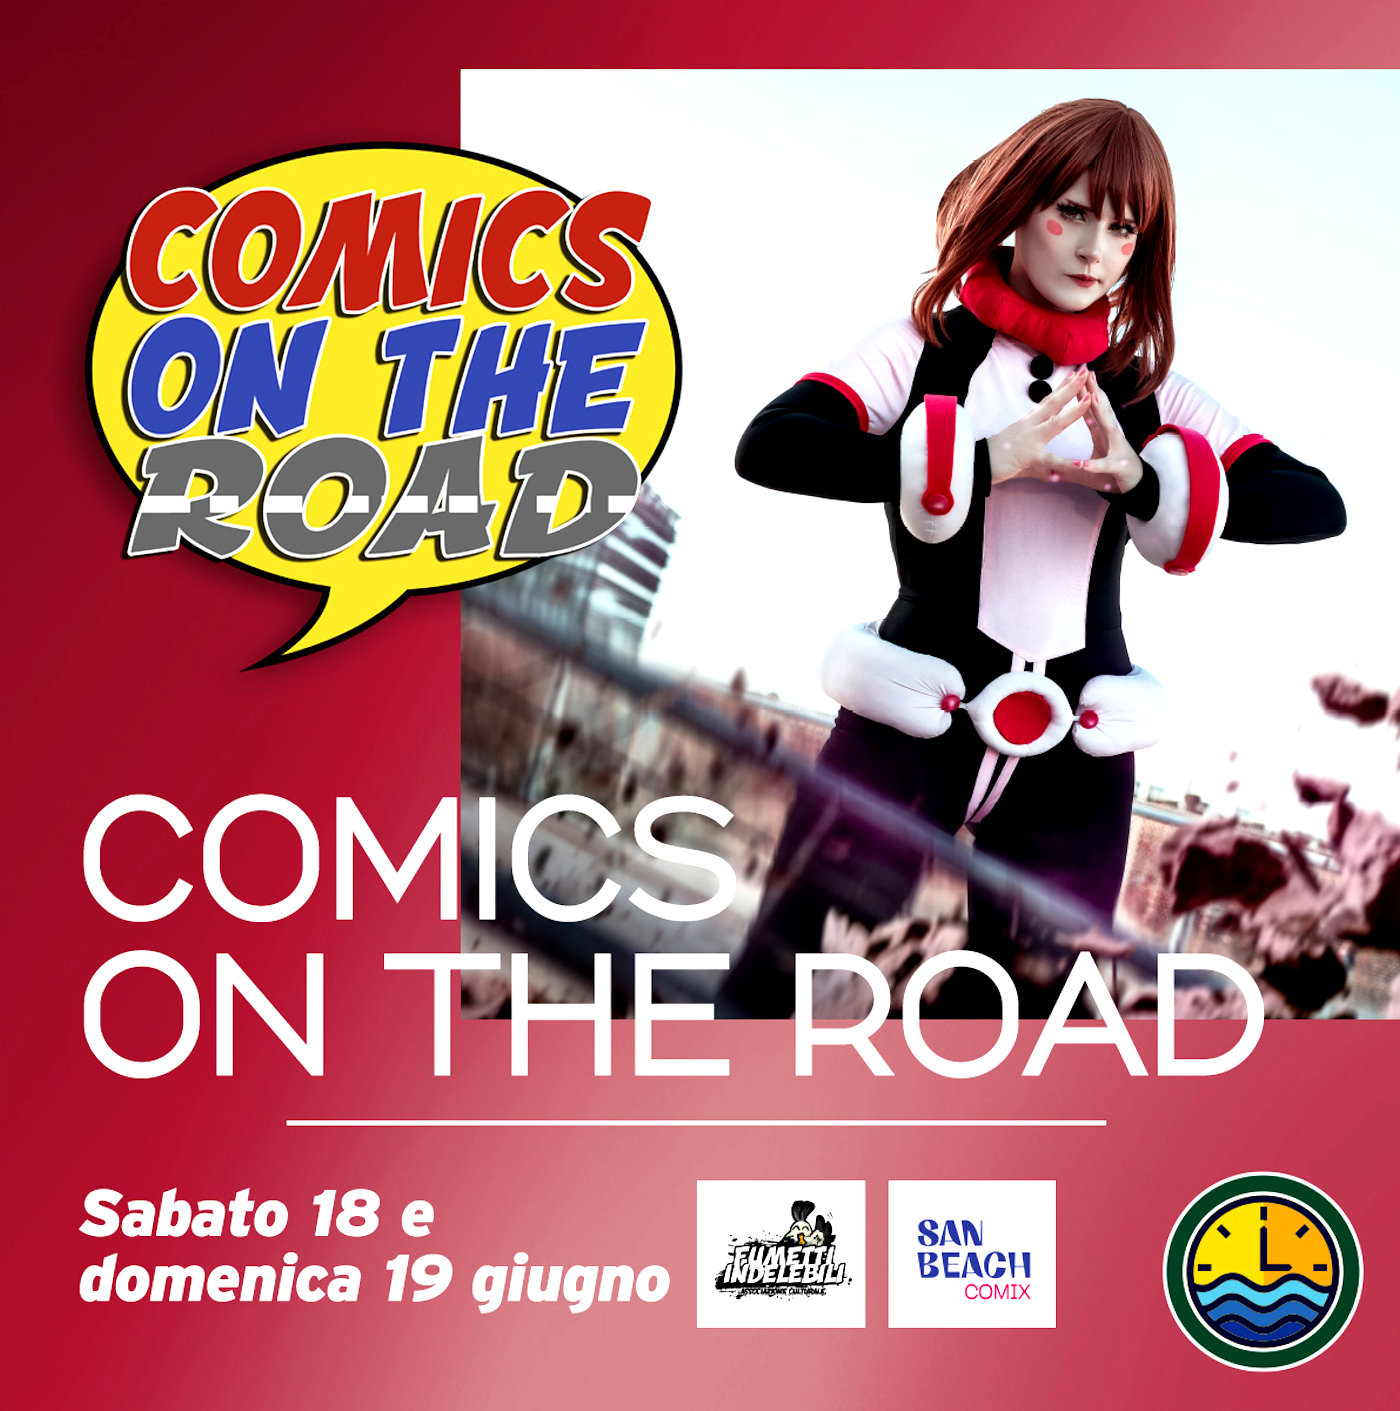 Comics On The Road – Aspettando il San Beach Comix